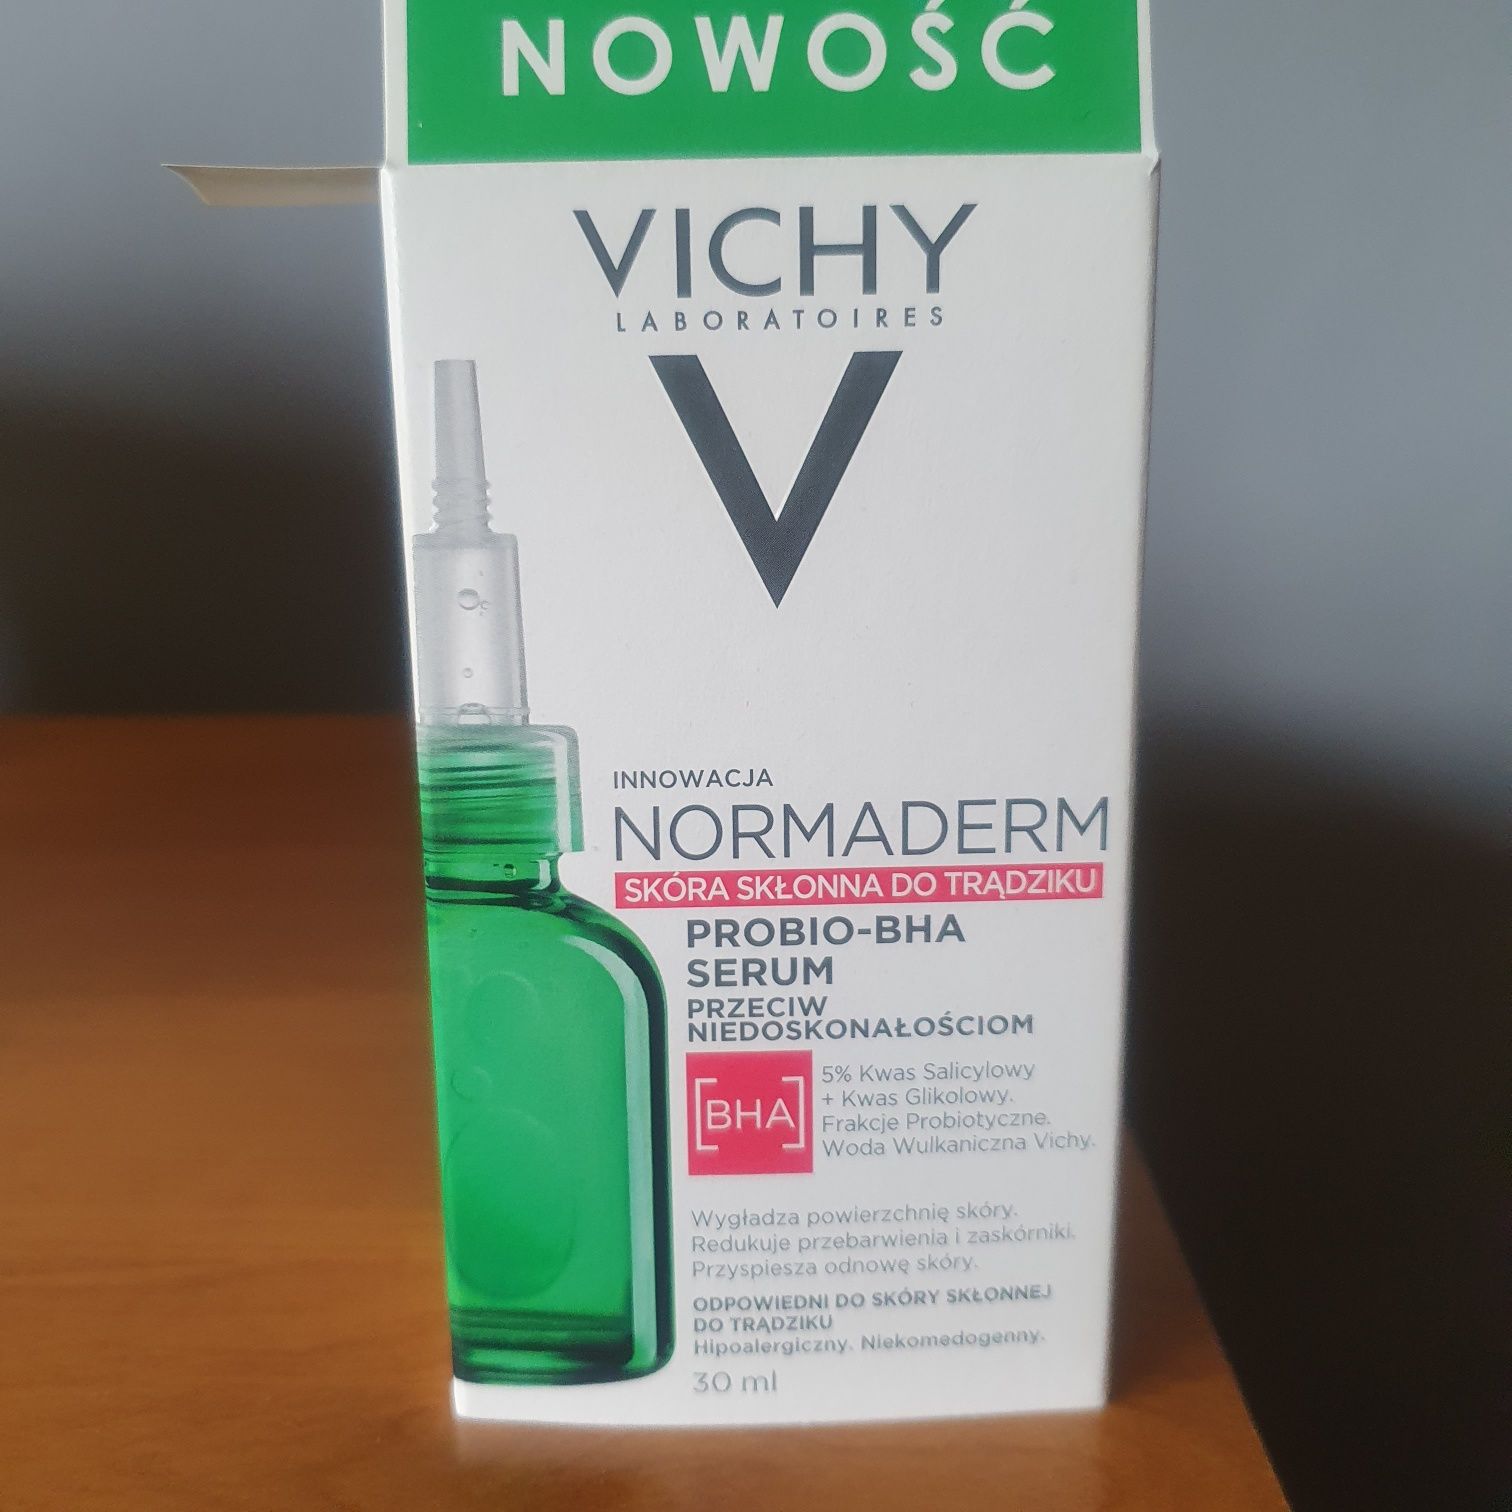 Vichy Normaderm serum PROBIO-BHA niedoskonałości skóry-la roche posay!